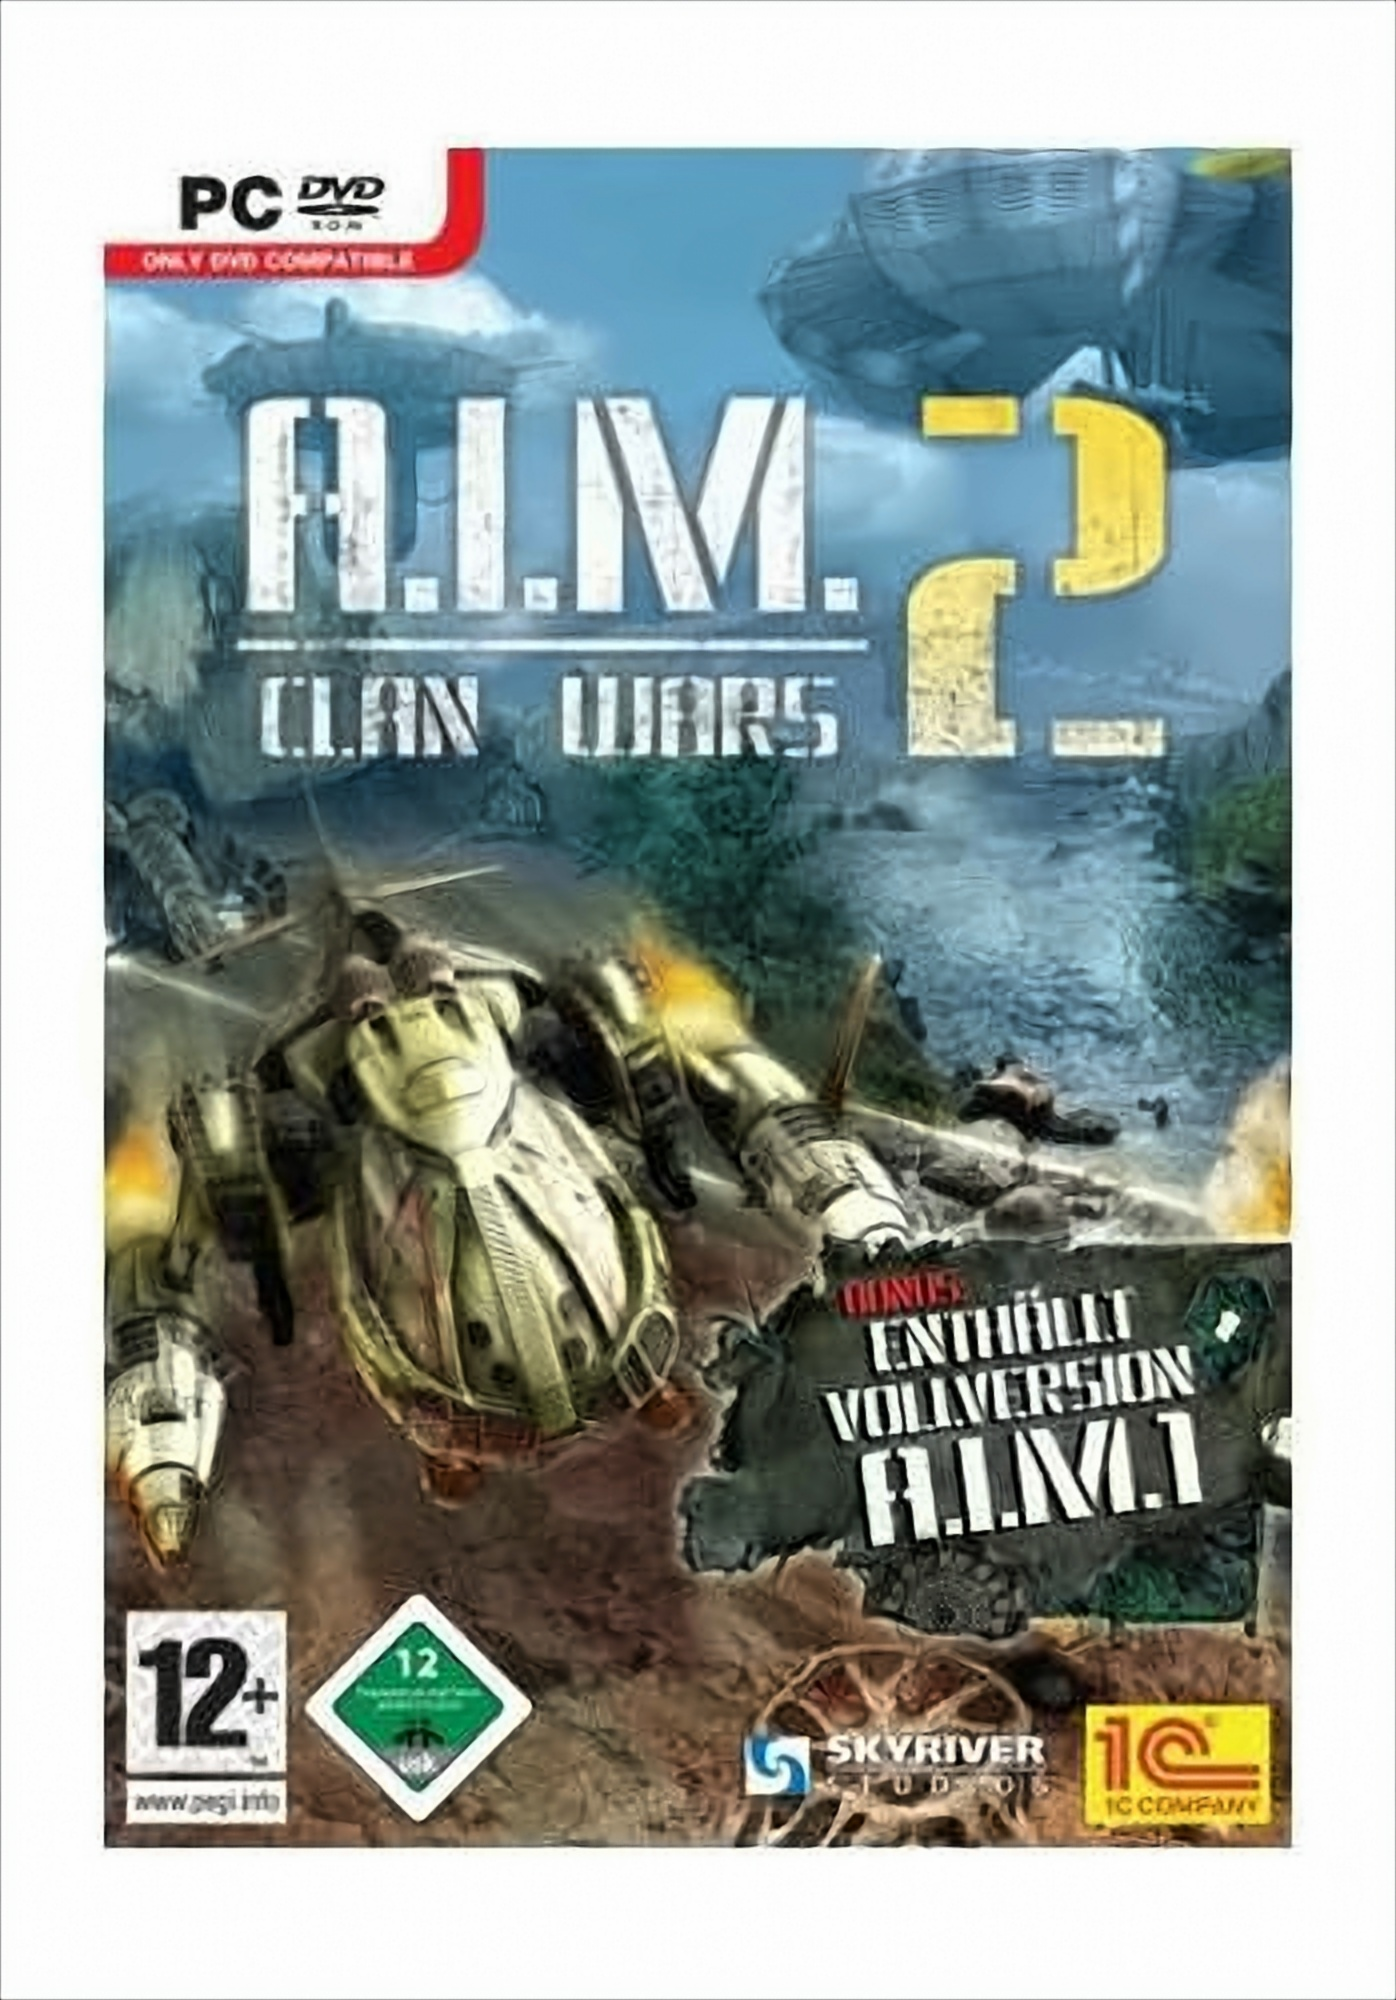 Wars [PC] - A.I.M. 2 Clan -